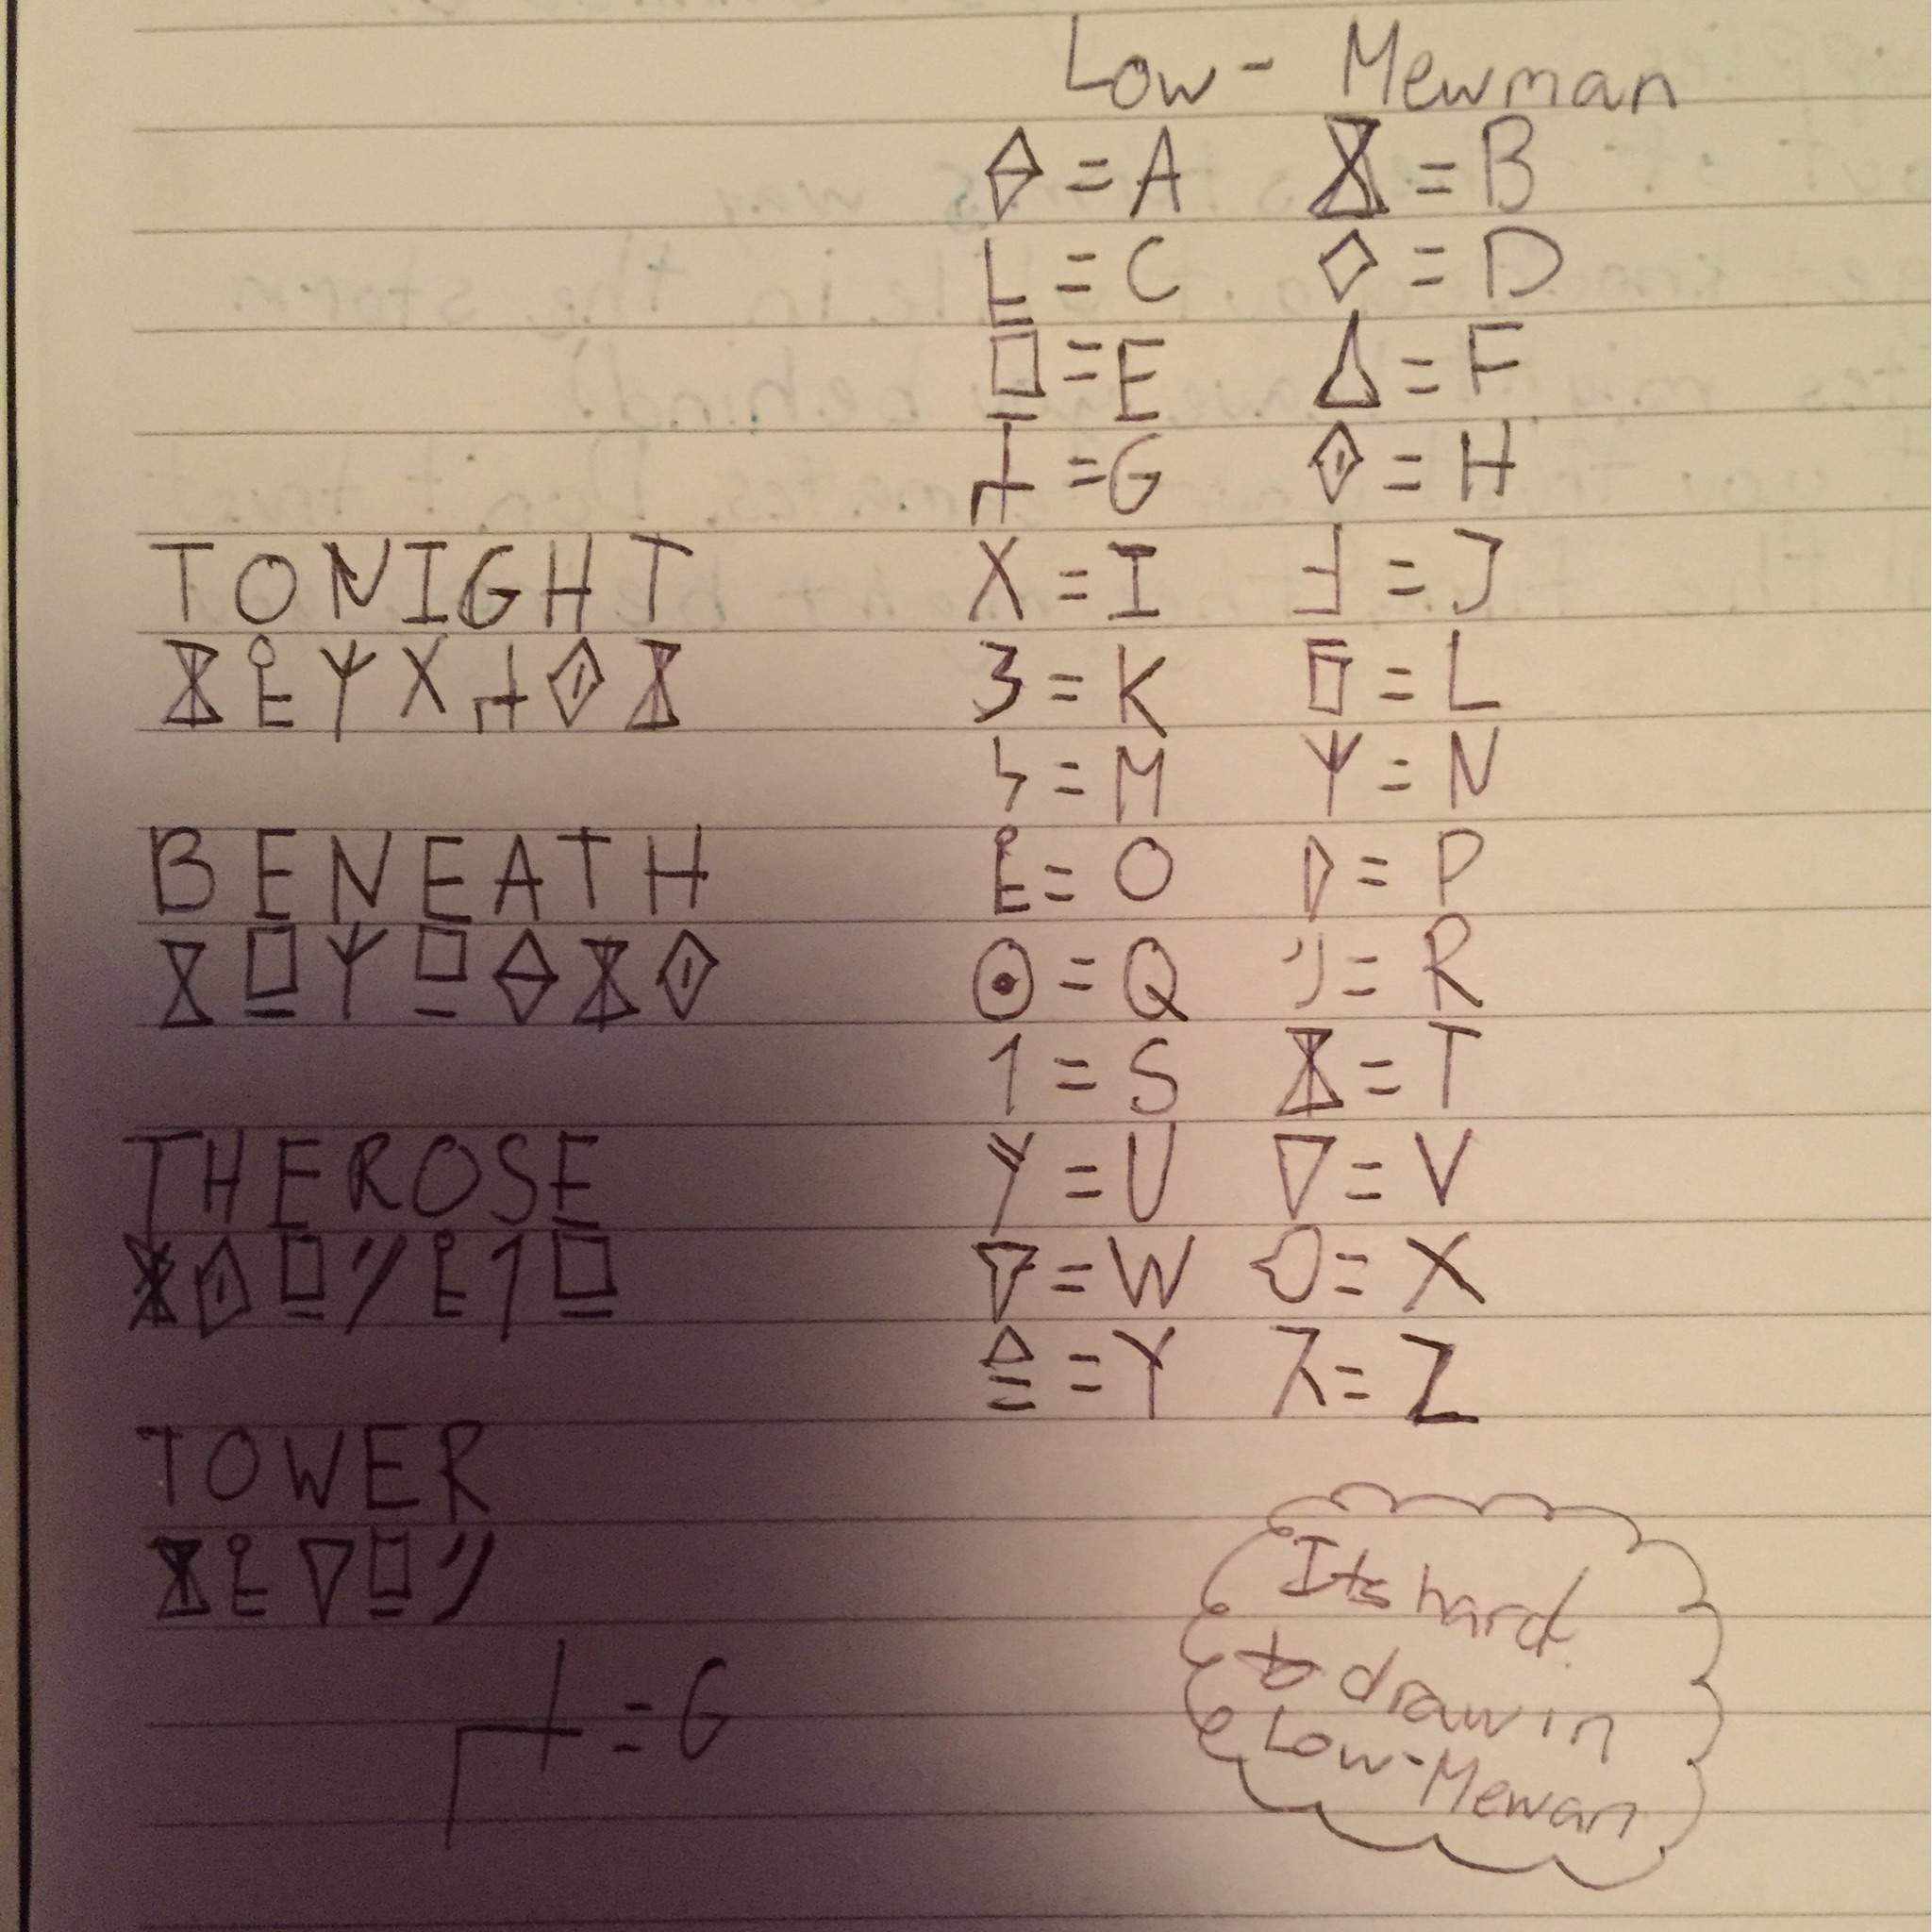 Low-mewman alphabet. | Alternative Svtfoe Amino Amino